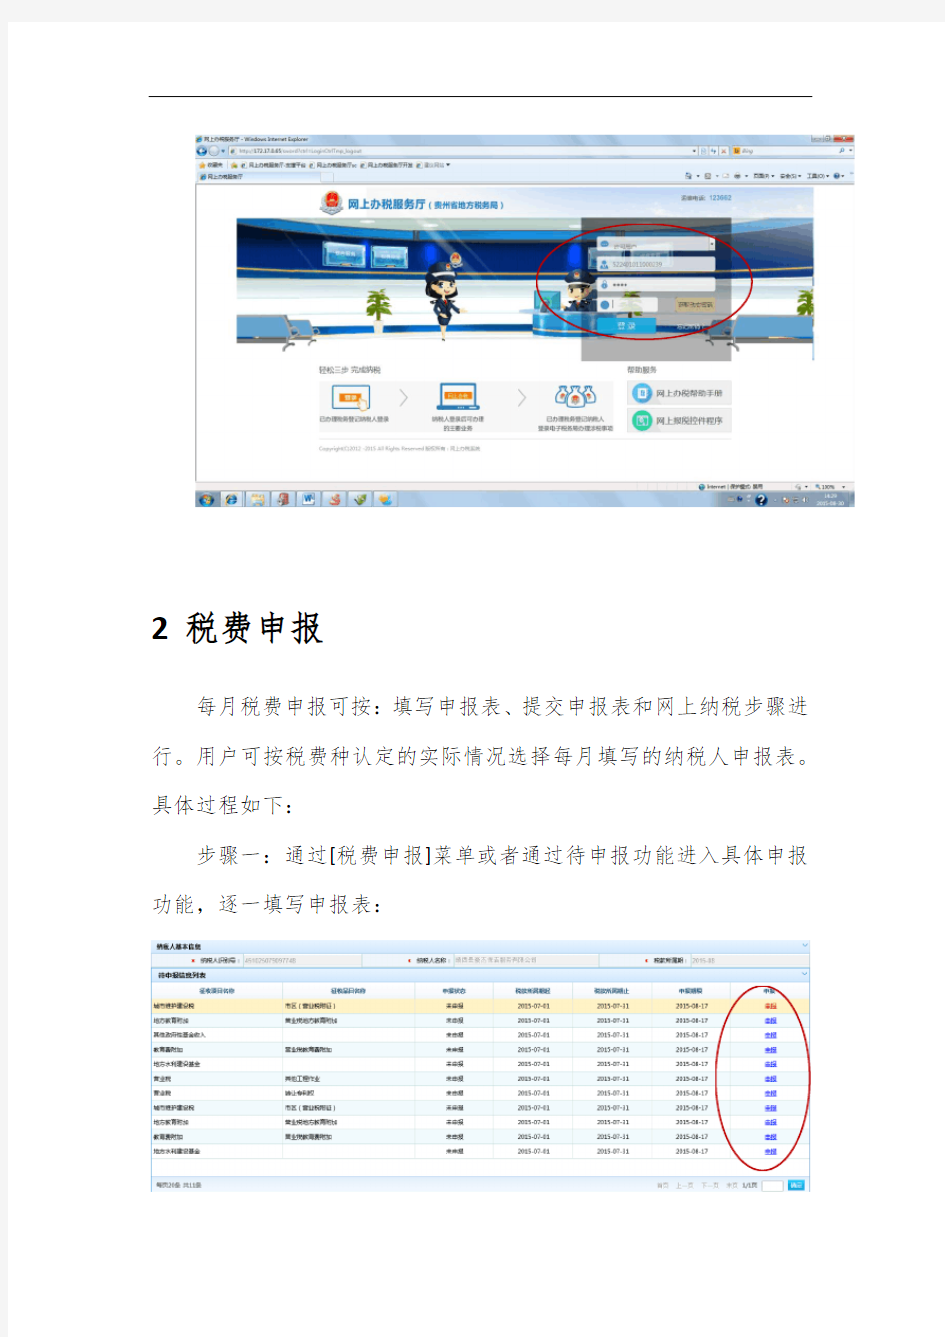 贵州地税网上办税平台操作指南[1]